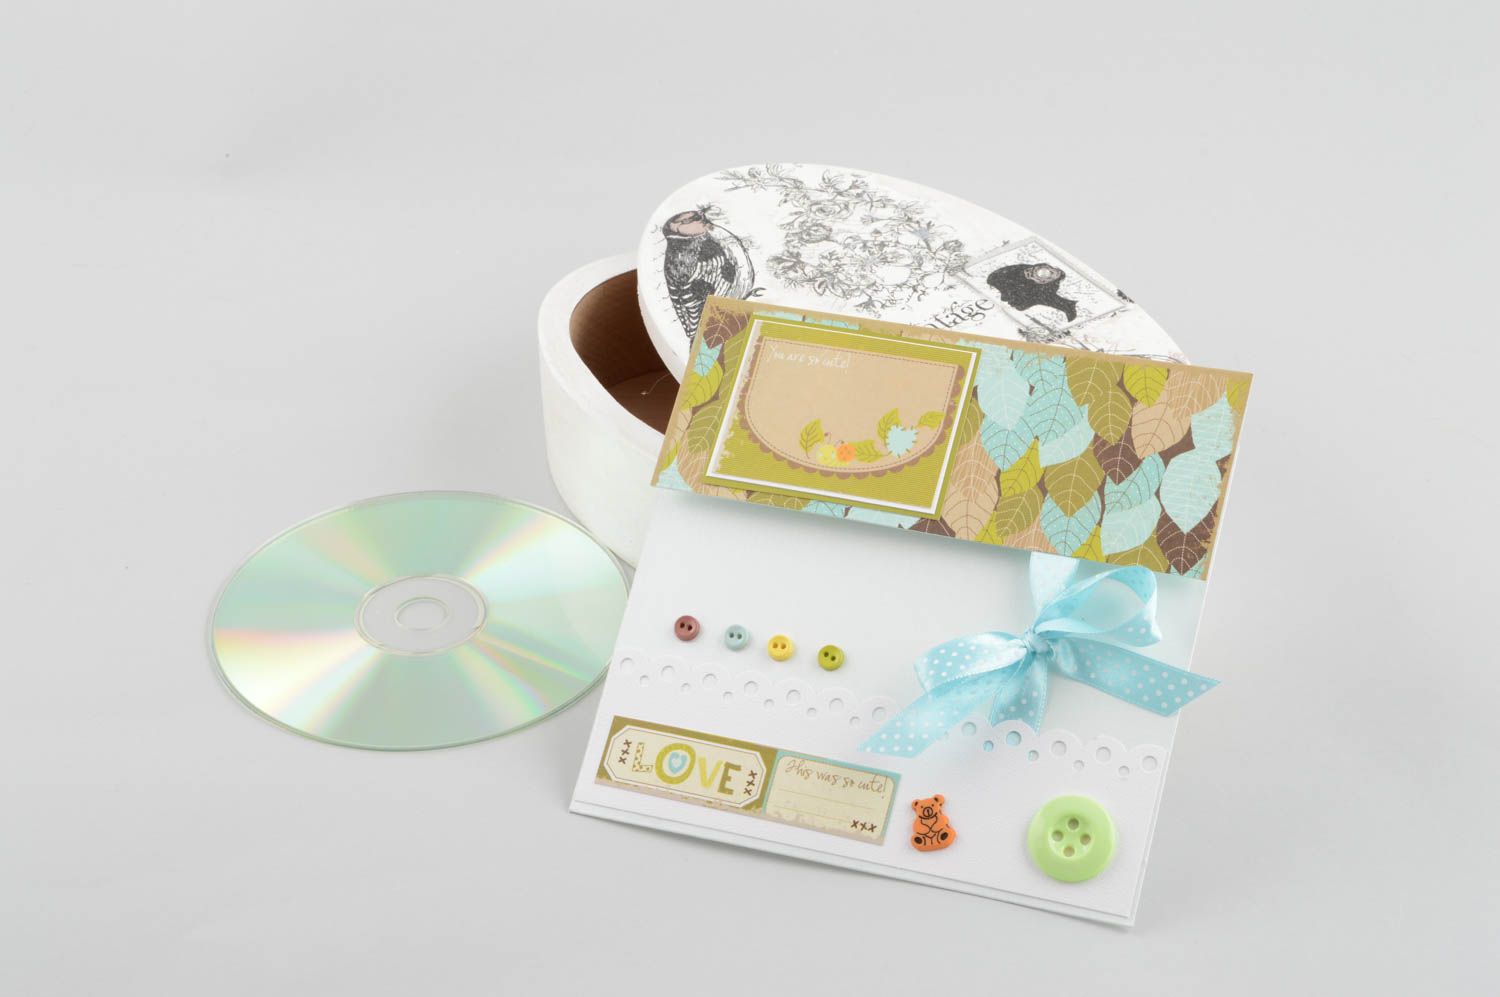 Handmade Papierhülle für CD kleines Geschenk CD Verpackung originell ausgefallen foto 1